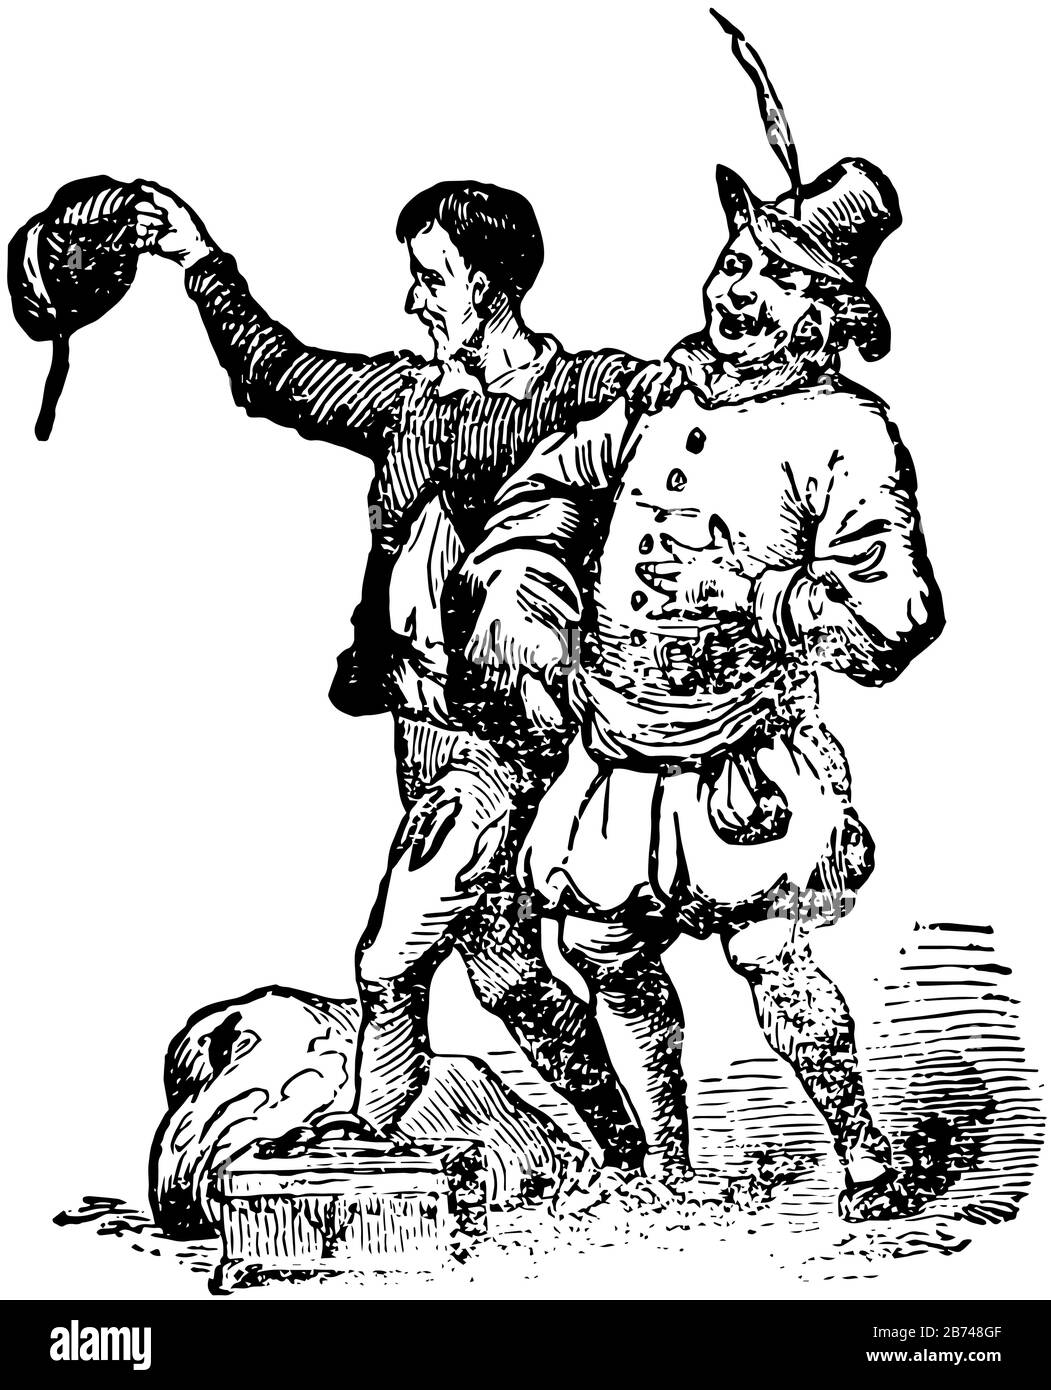 Les nouvelles tenues de l'empereur, cette scène montre deux hommes marchant ensemble, un homme tenant un chapeau dans une main et l'autre gardée sur l'épaule d'un autre homme, Illustration de Vecteur